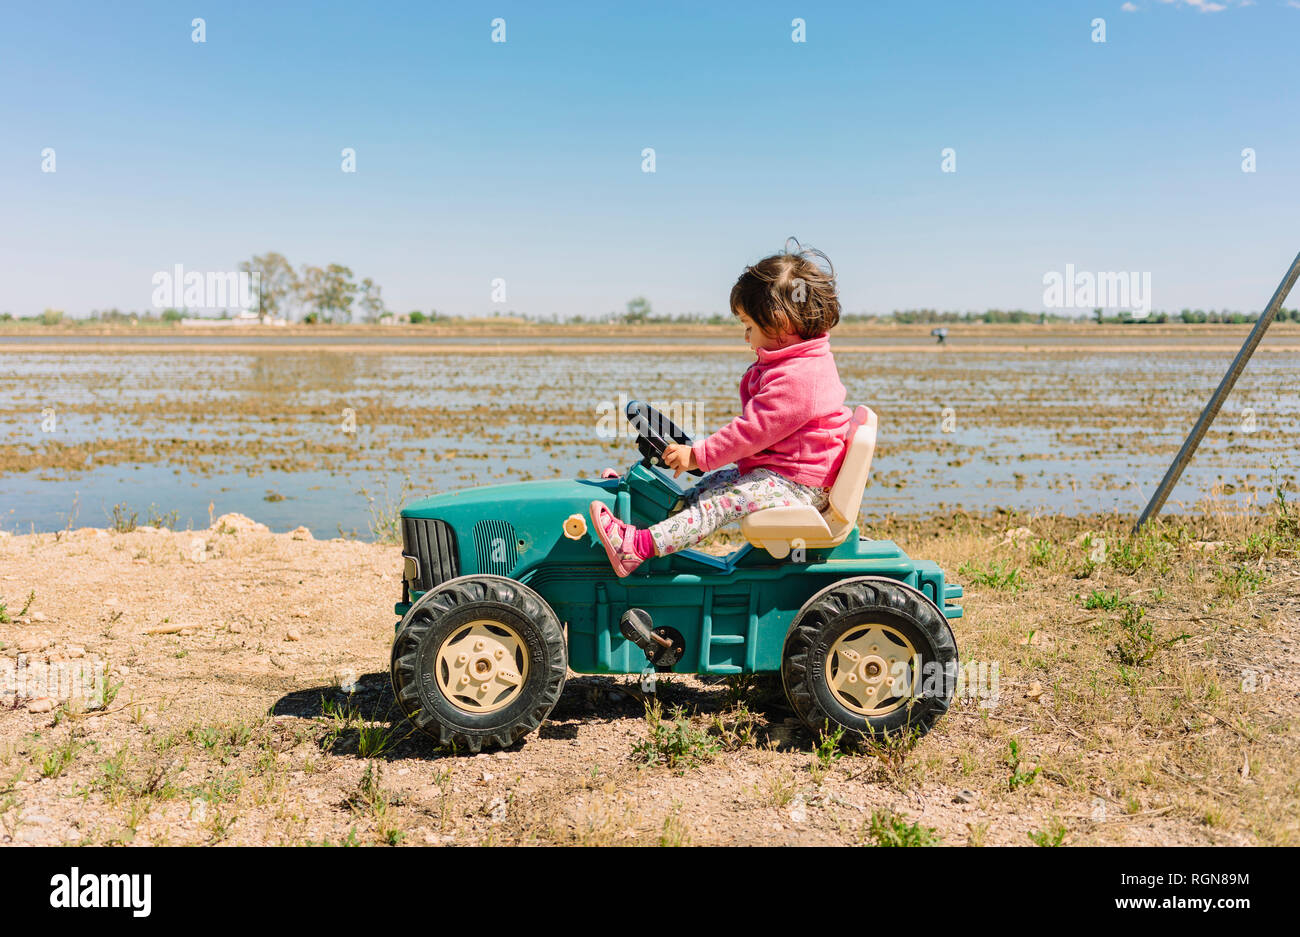 Baby Mädchen fahren ein Spielzeug Traktor neben den Reisfeldern  Stockfotografie - Alamy